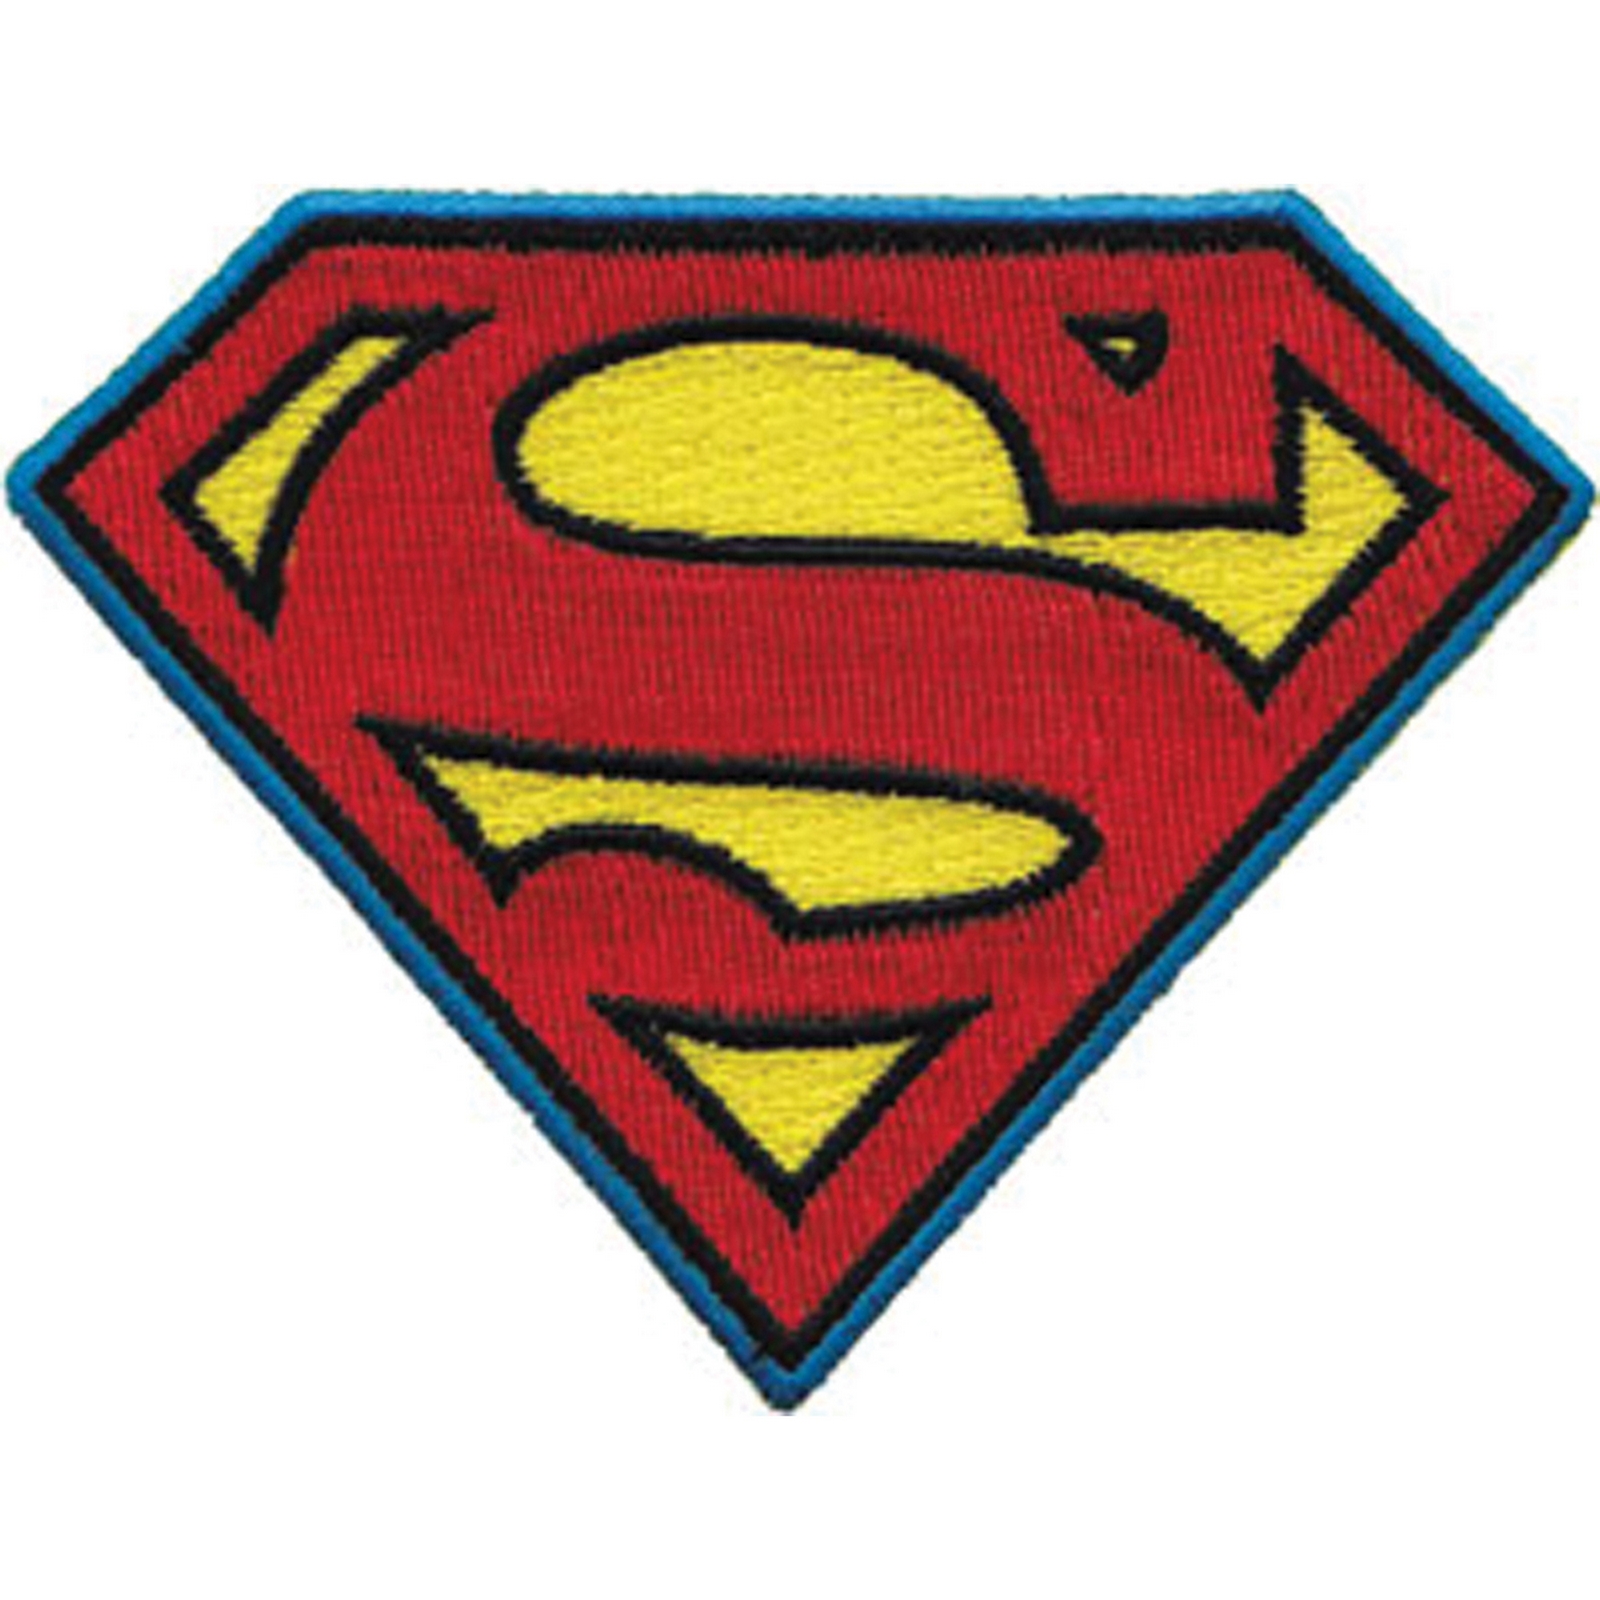 C&D Visionary DC Comics Super Hero Patches Superman Insignia 4"X4"X4"